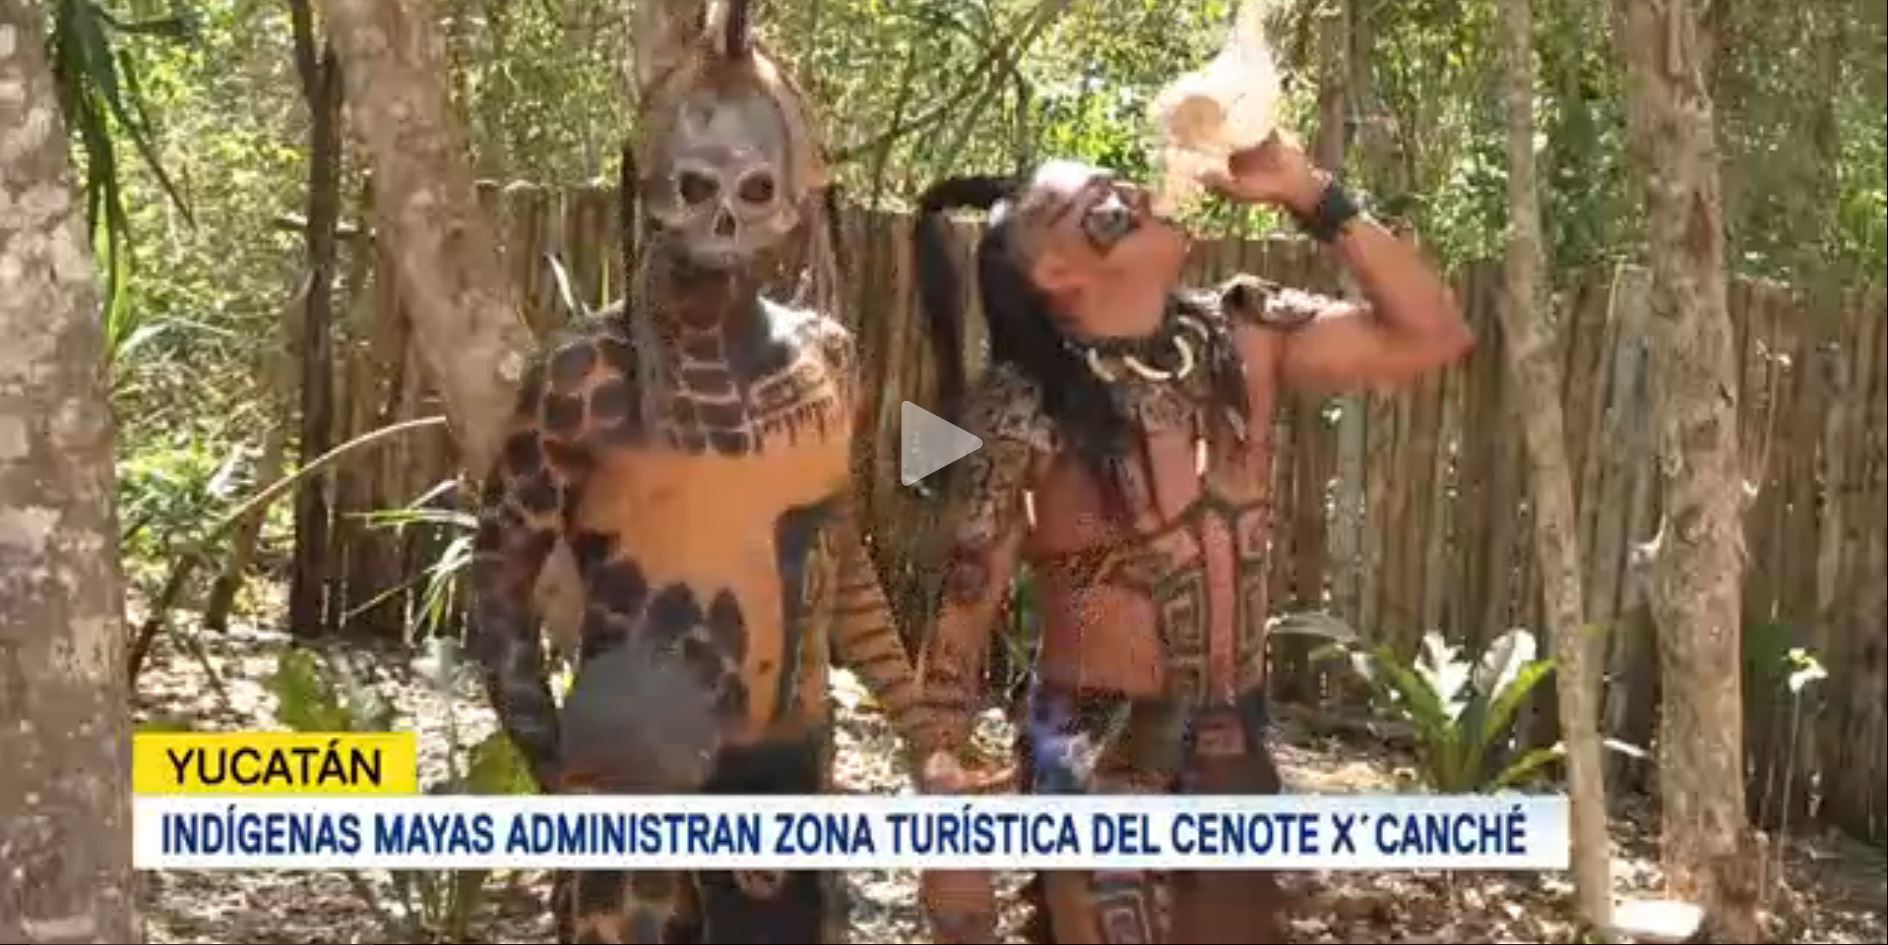 Indígenas mayas administran zona turística del cenote X Canché en Yucatán